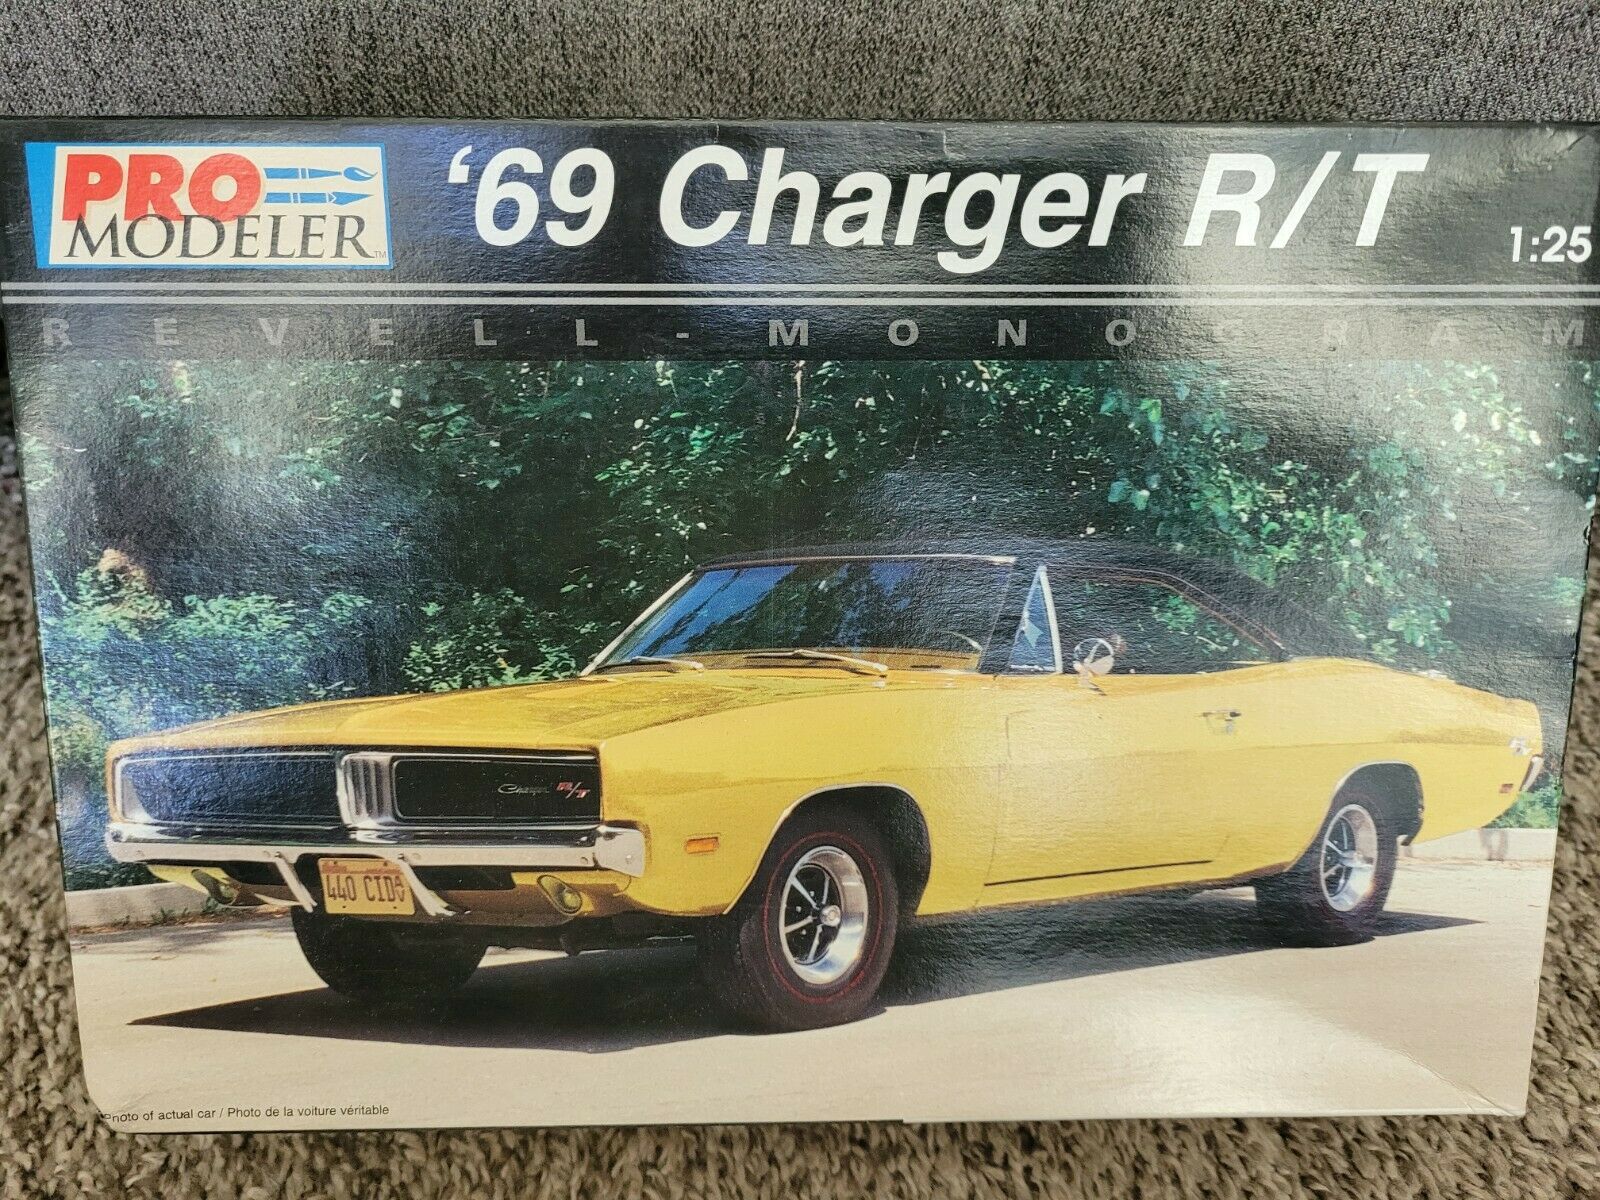 Pro Modeler '69 Charger R/t Model Kit #85-5937 1:25 Monogram 1997 Complete